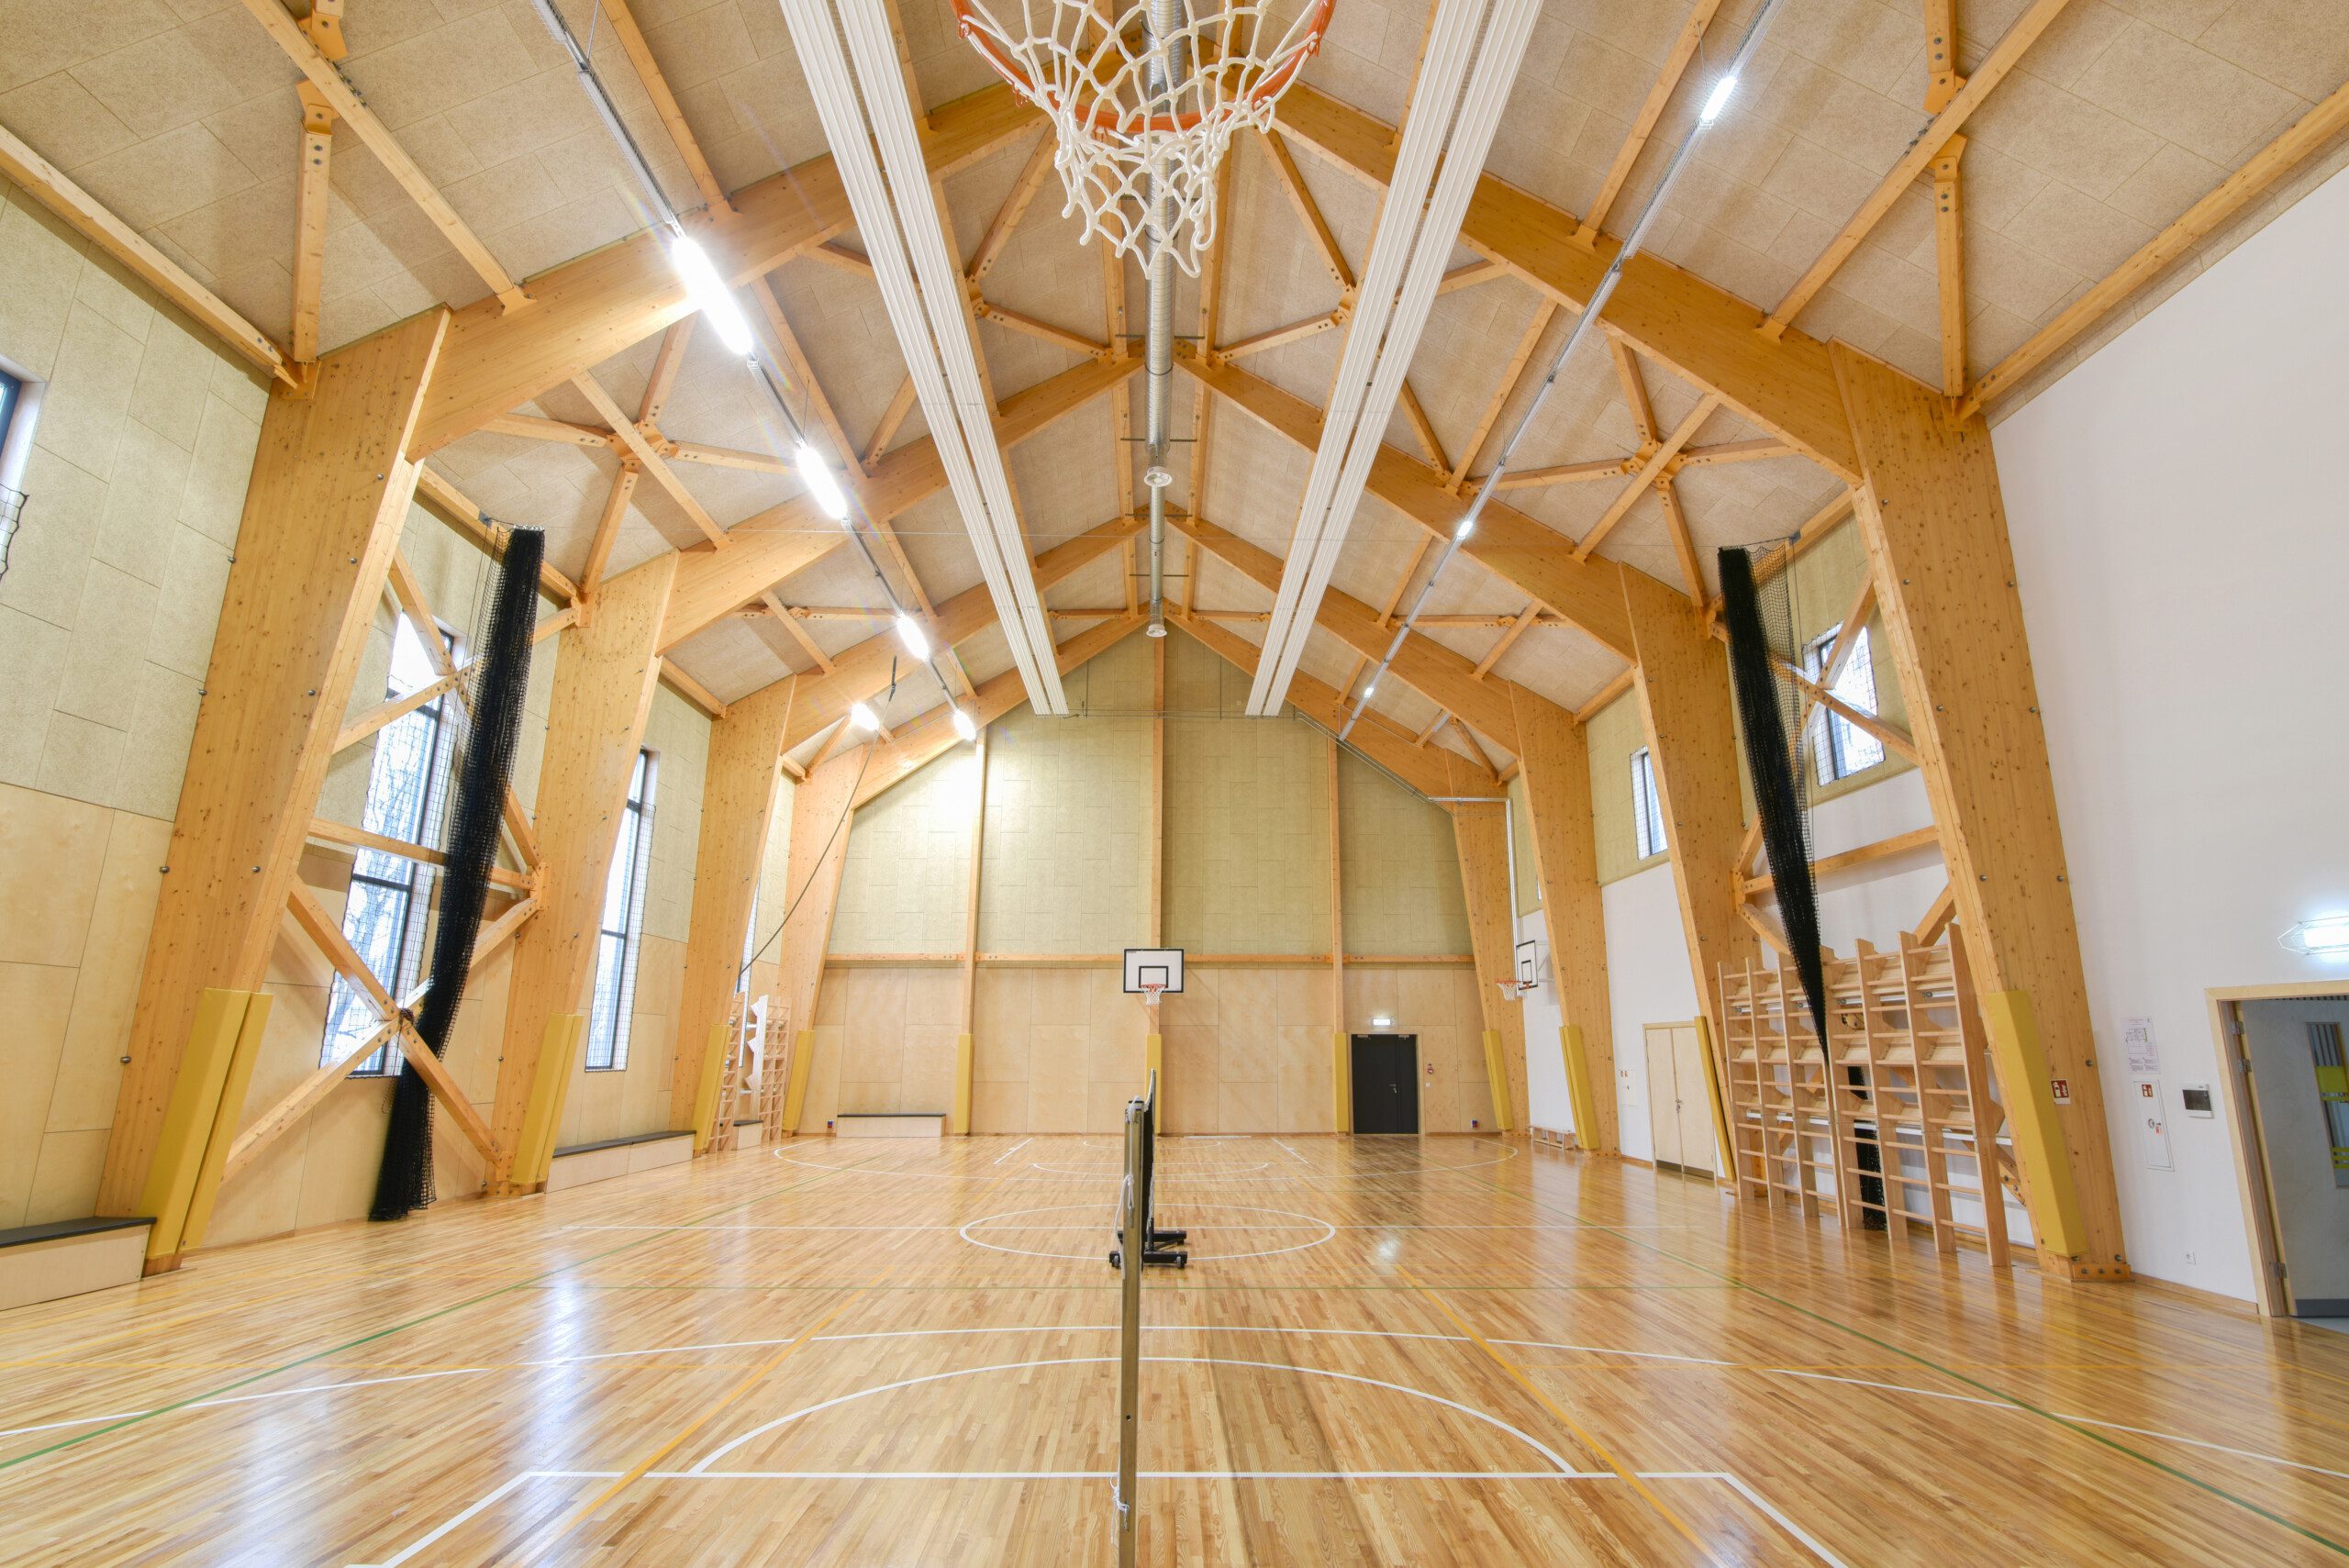 Sports hall in Latvia Photo 1